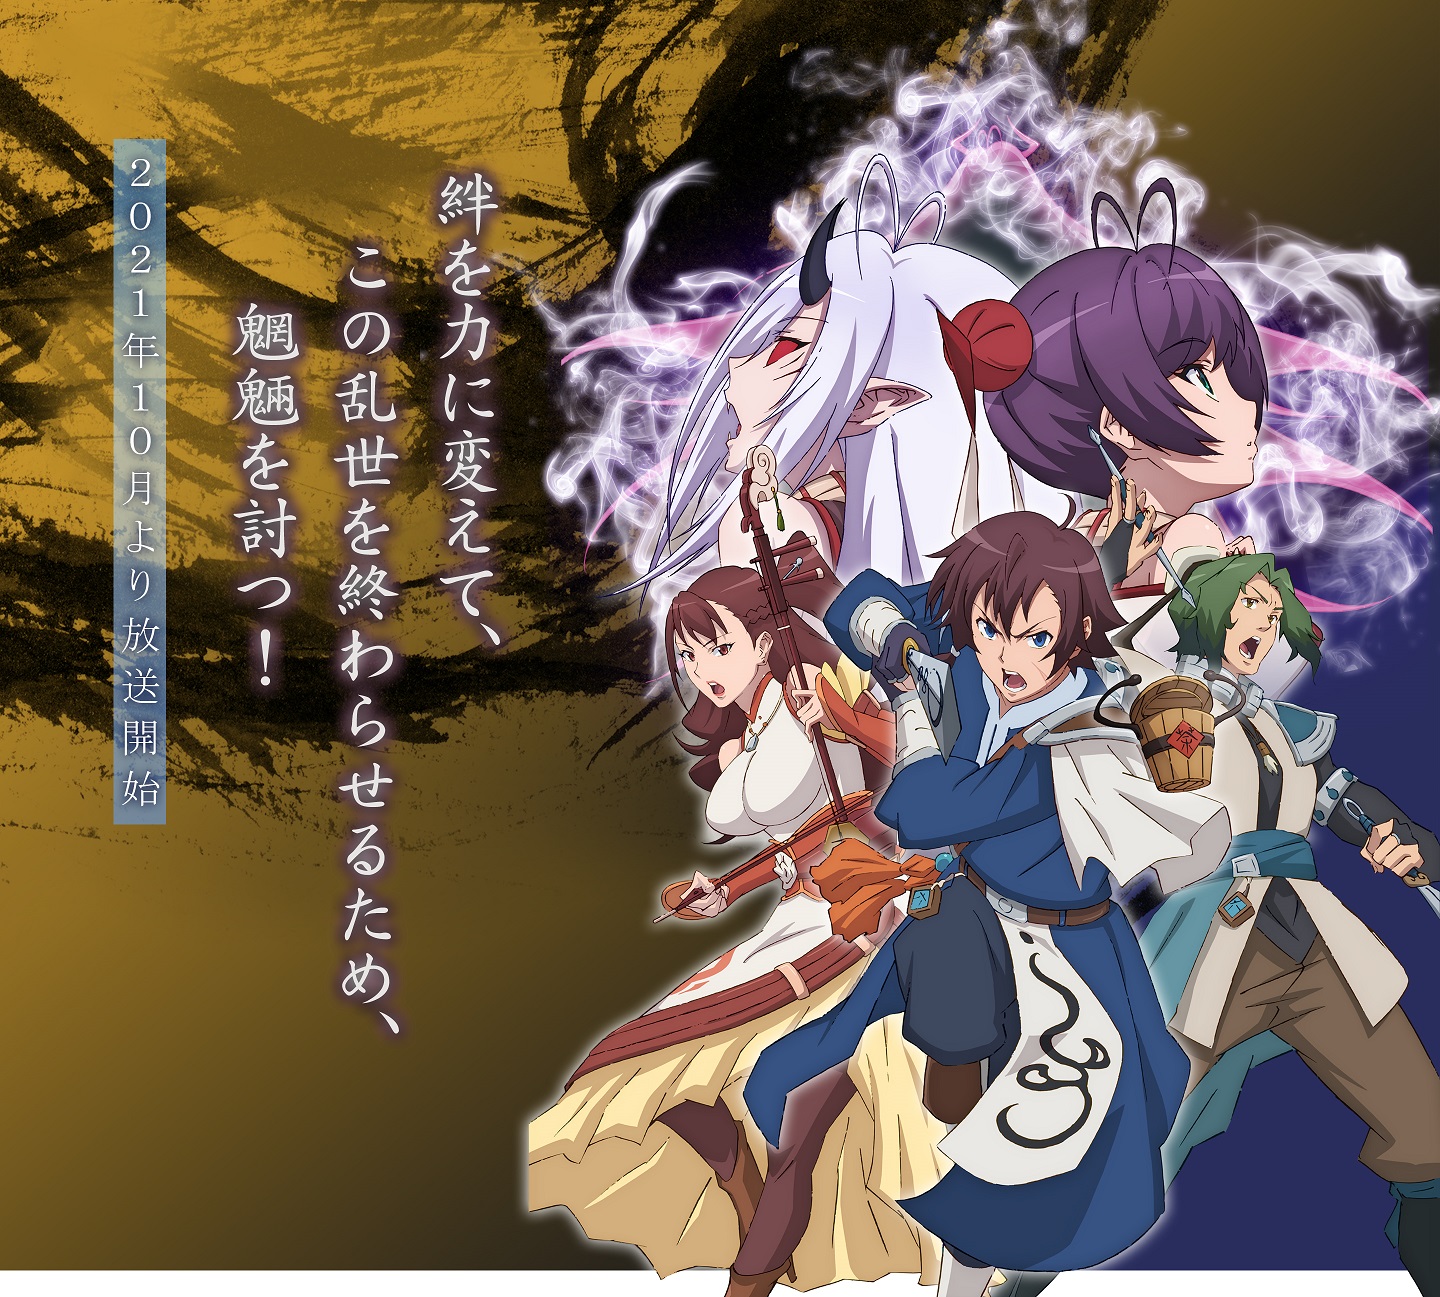 Una imagen clave para el próximo anime televisivo Gensou Sangokushi -Tengen Reishinki-, con el elenco principal de la serie posando dramáticamente.